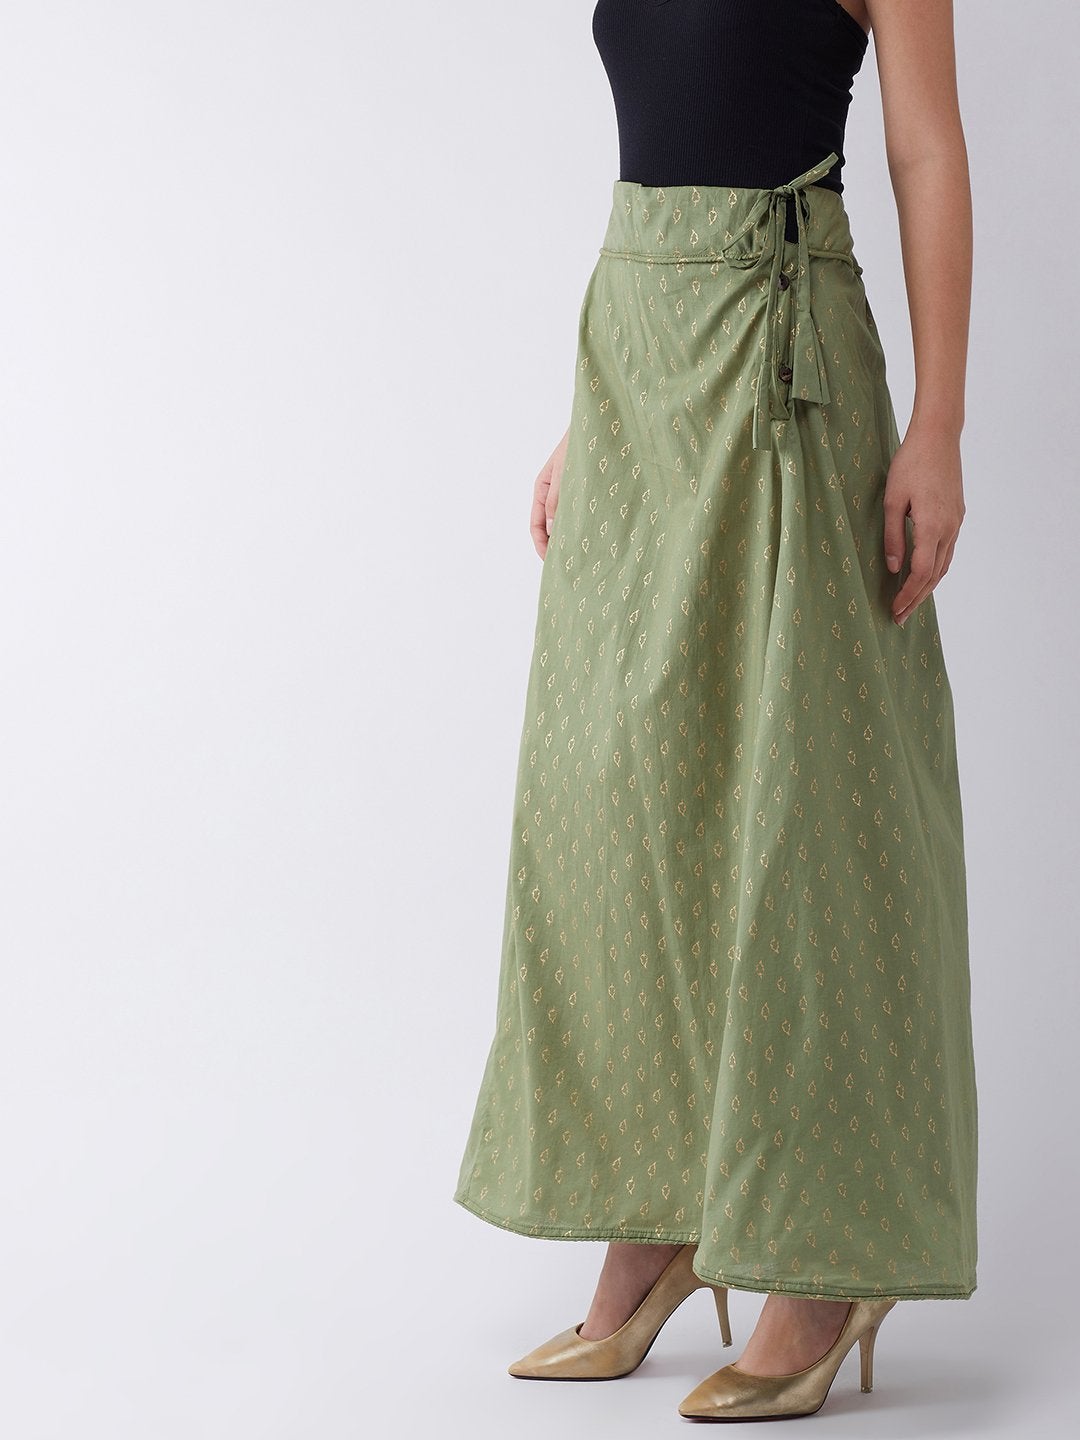 Women's Green Gold Leaf Print Skirt - InWeave